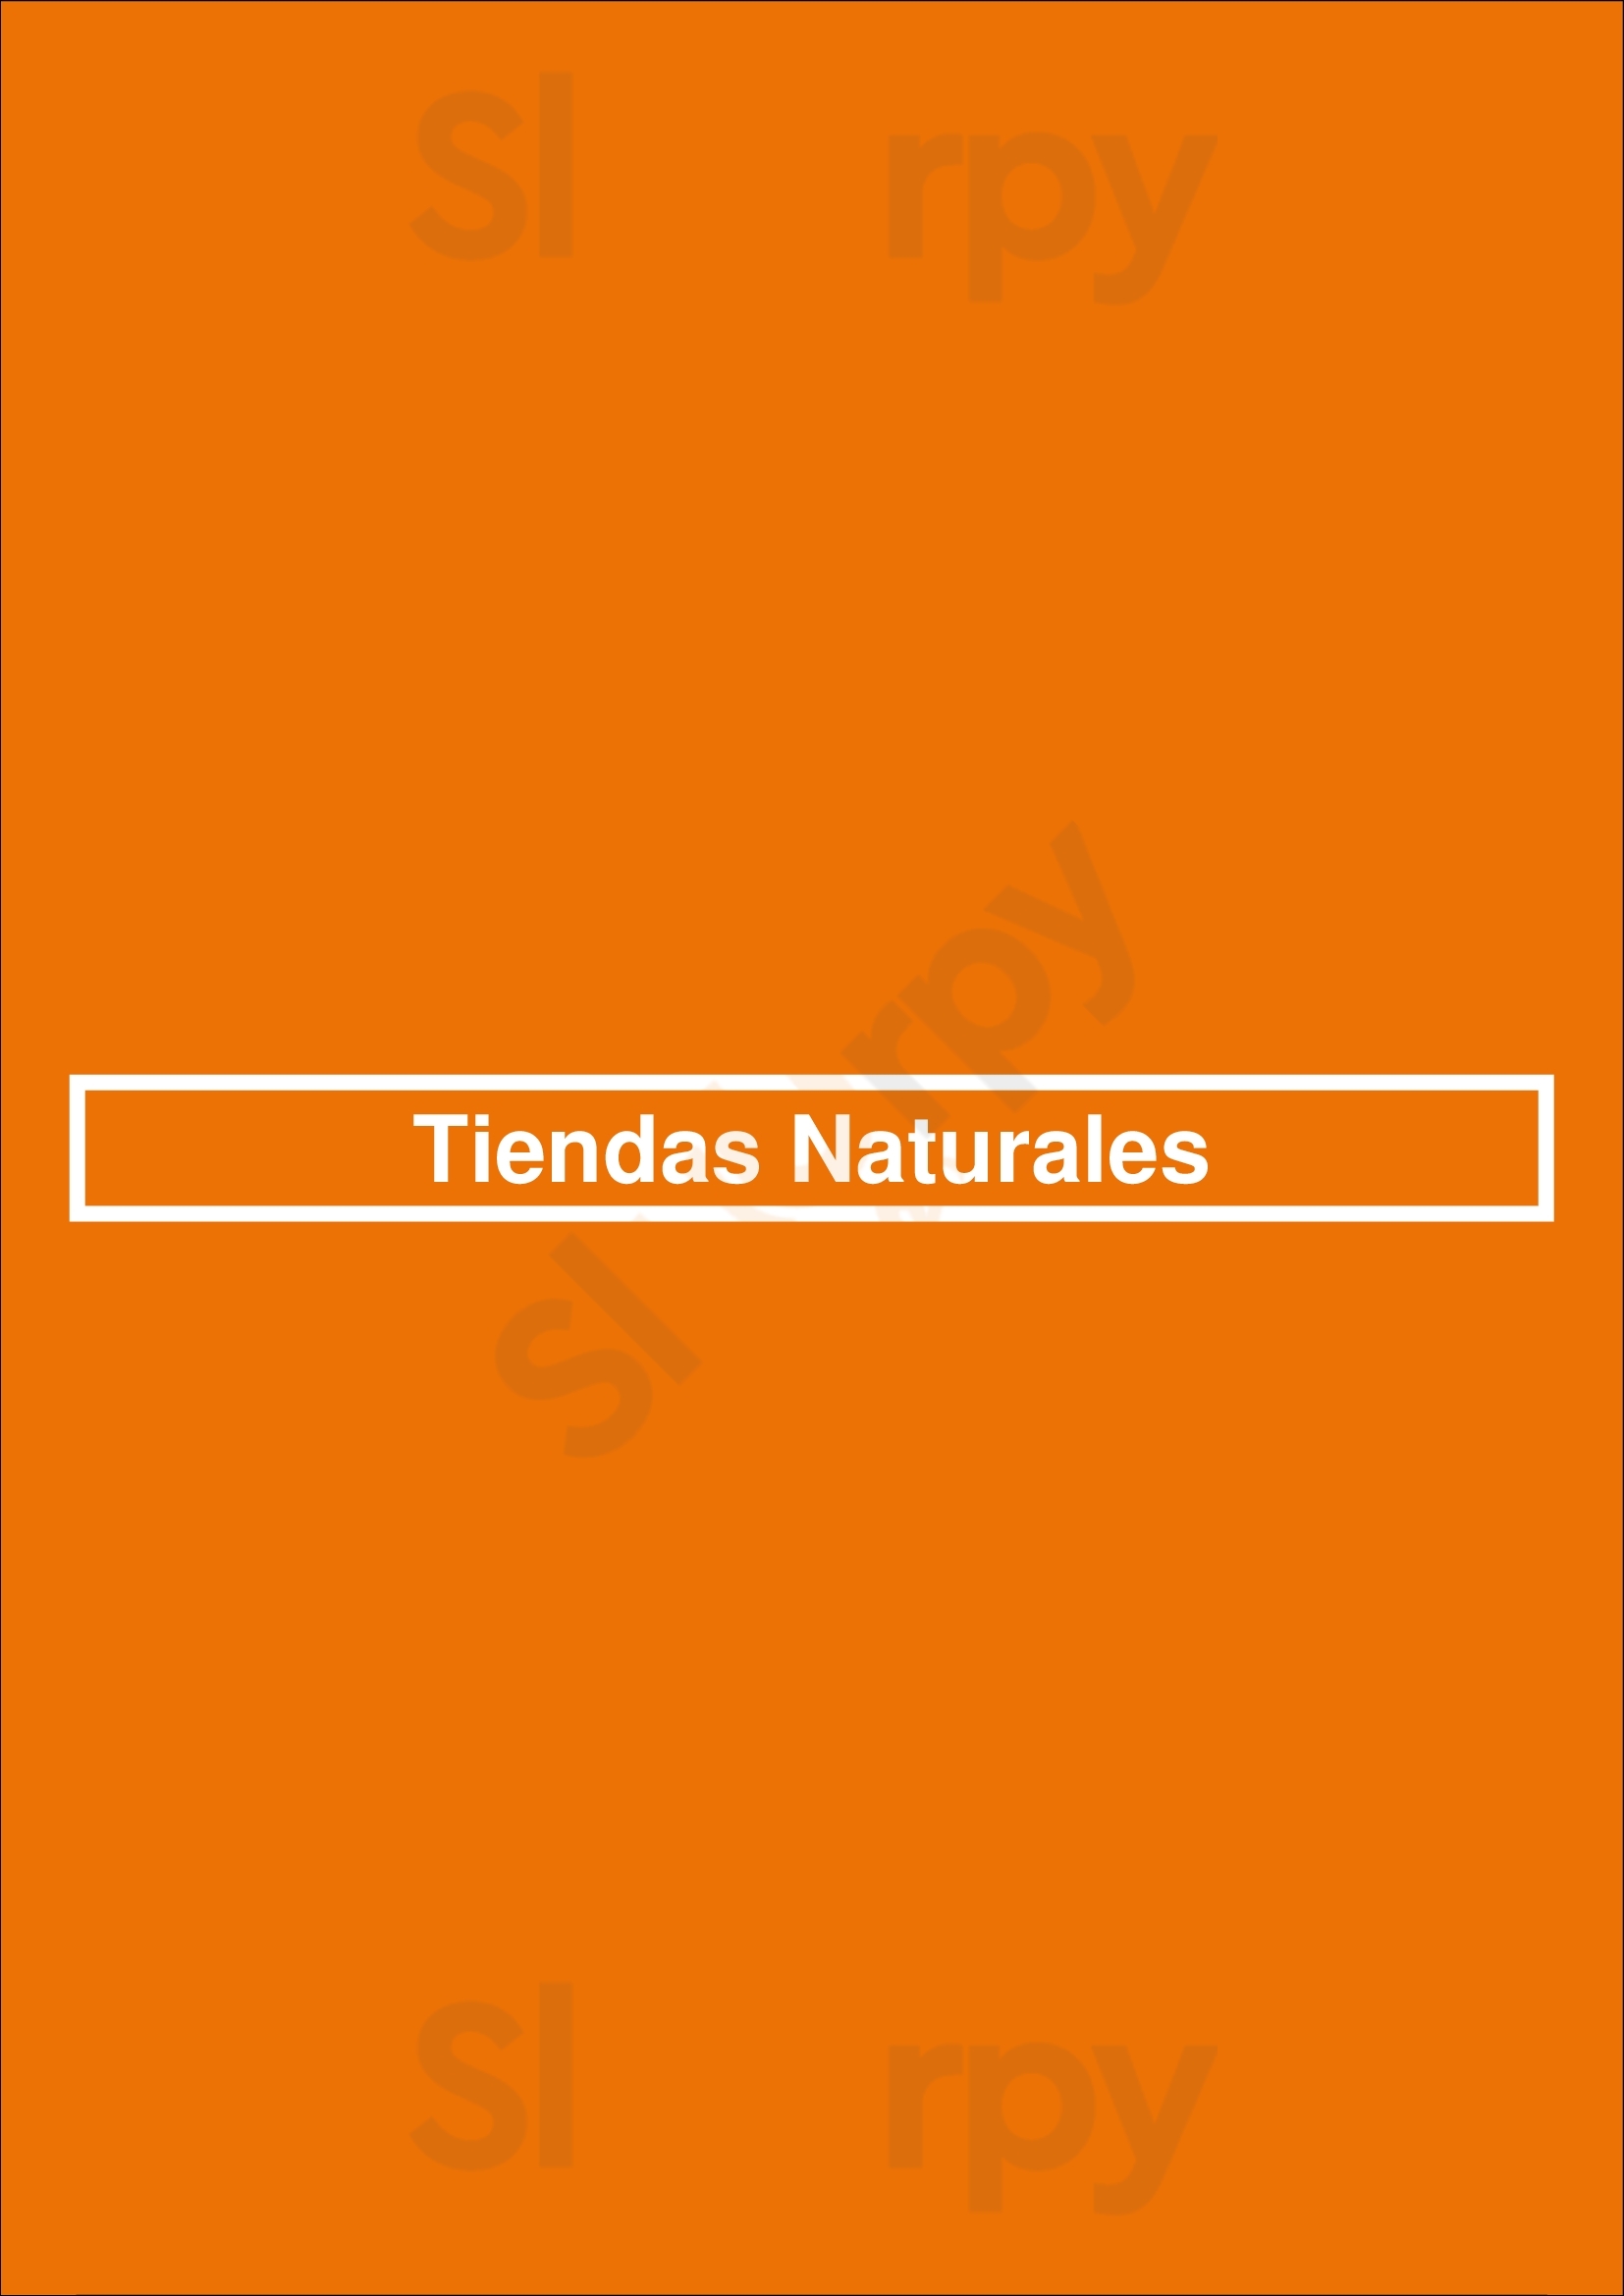 Tiendas Naturales Buenos Aires Menu - 1